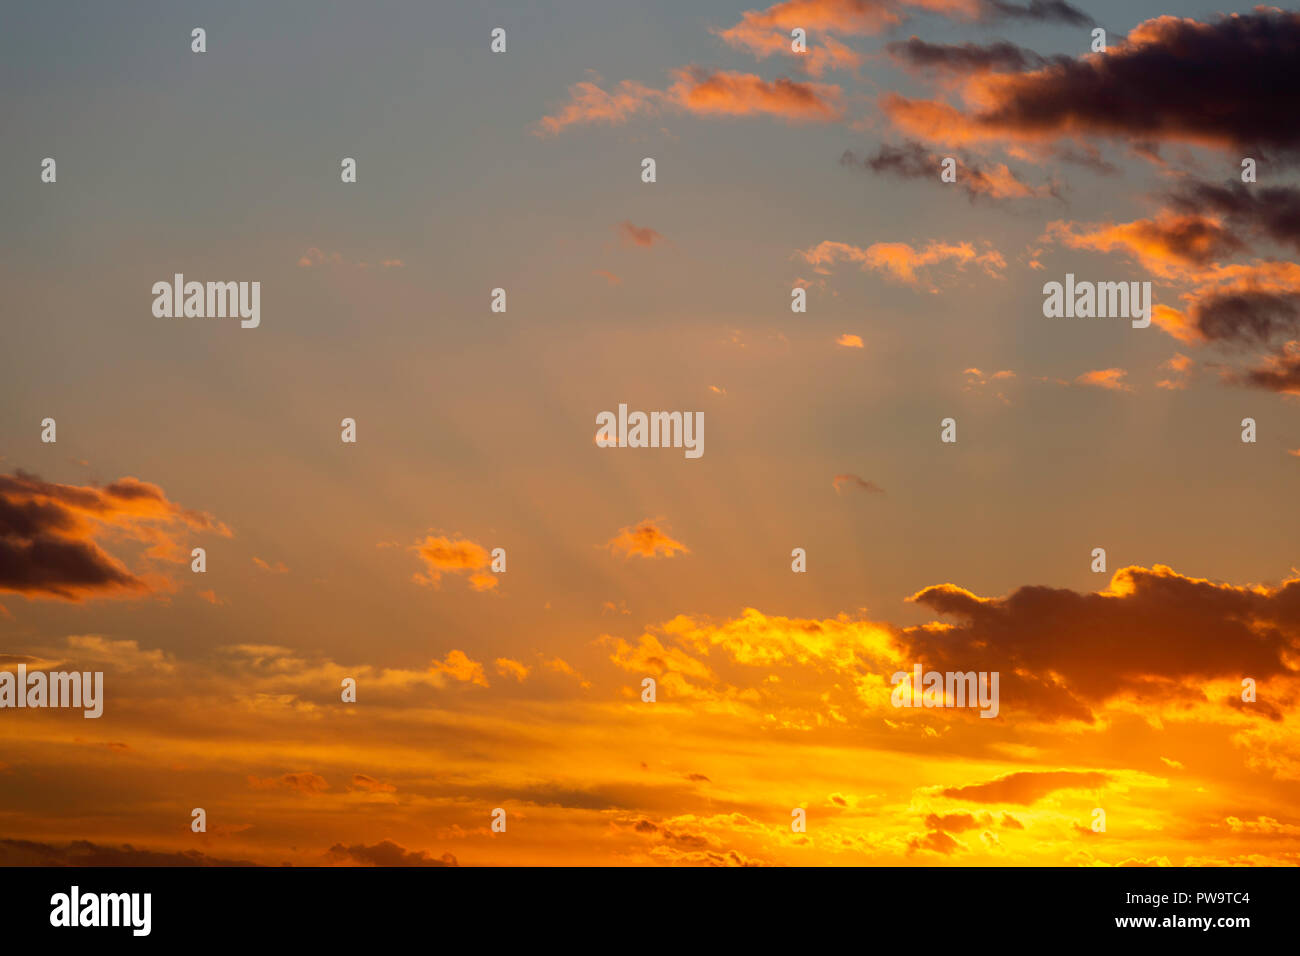 Rayons crépusculaires, parfois connu sous le nom de Dieu, au milieu des rayons nuages orange au coucher du soleil pendant le mois de septembre. Prises à partir de la Réserve Naturelle des Marais d'OARE, Kent, UK. Banque D'Images